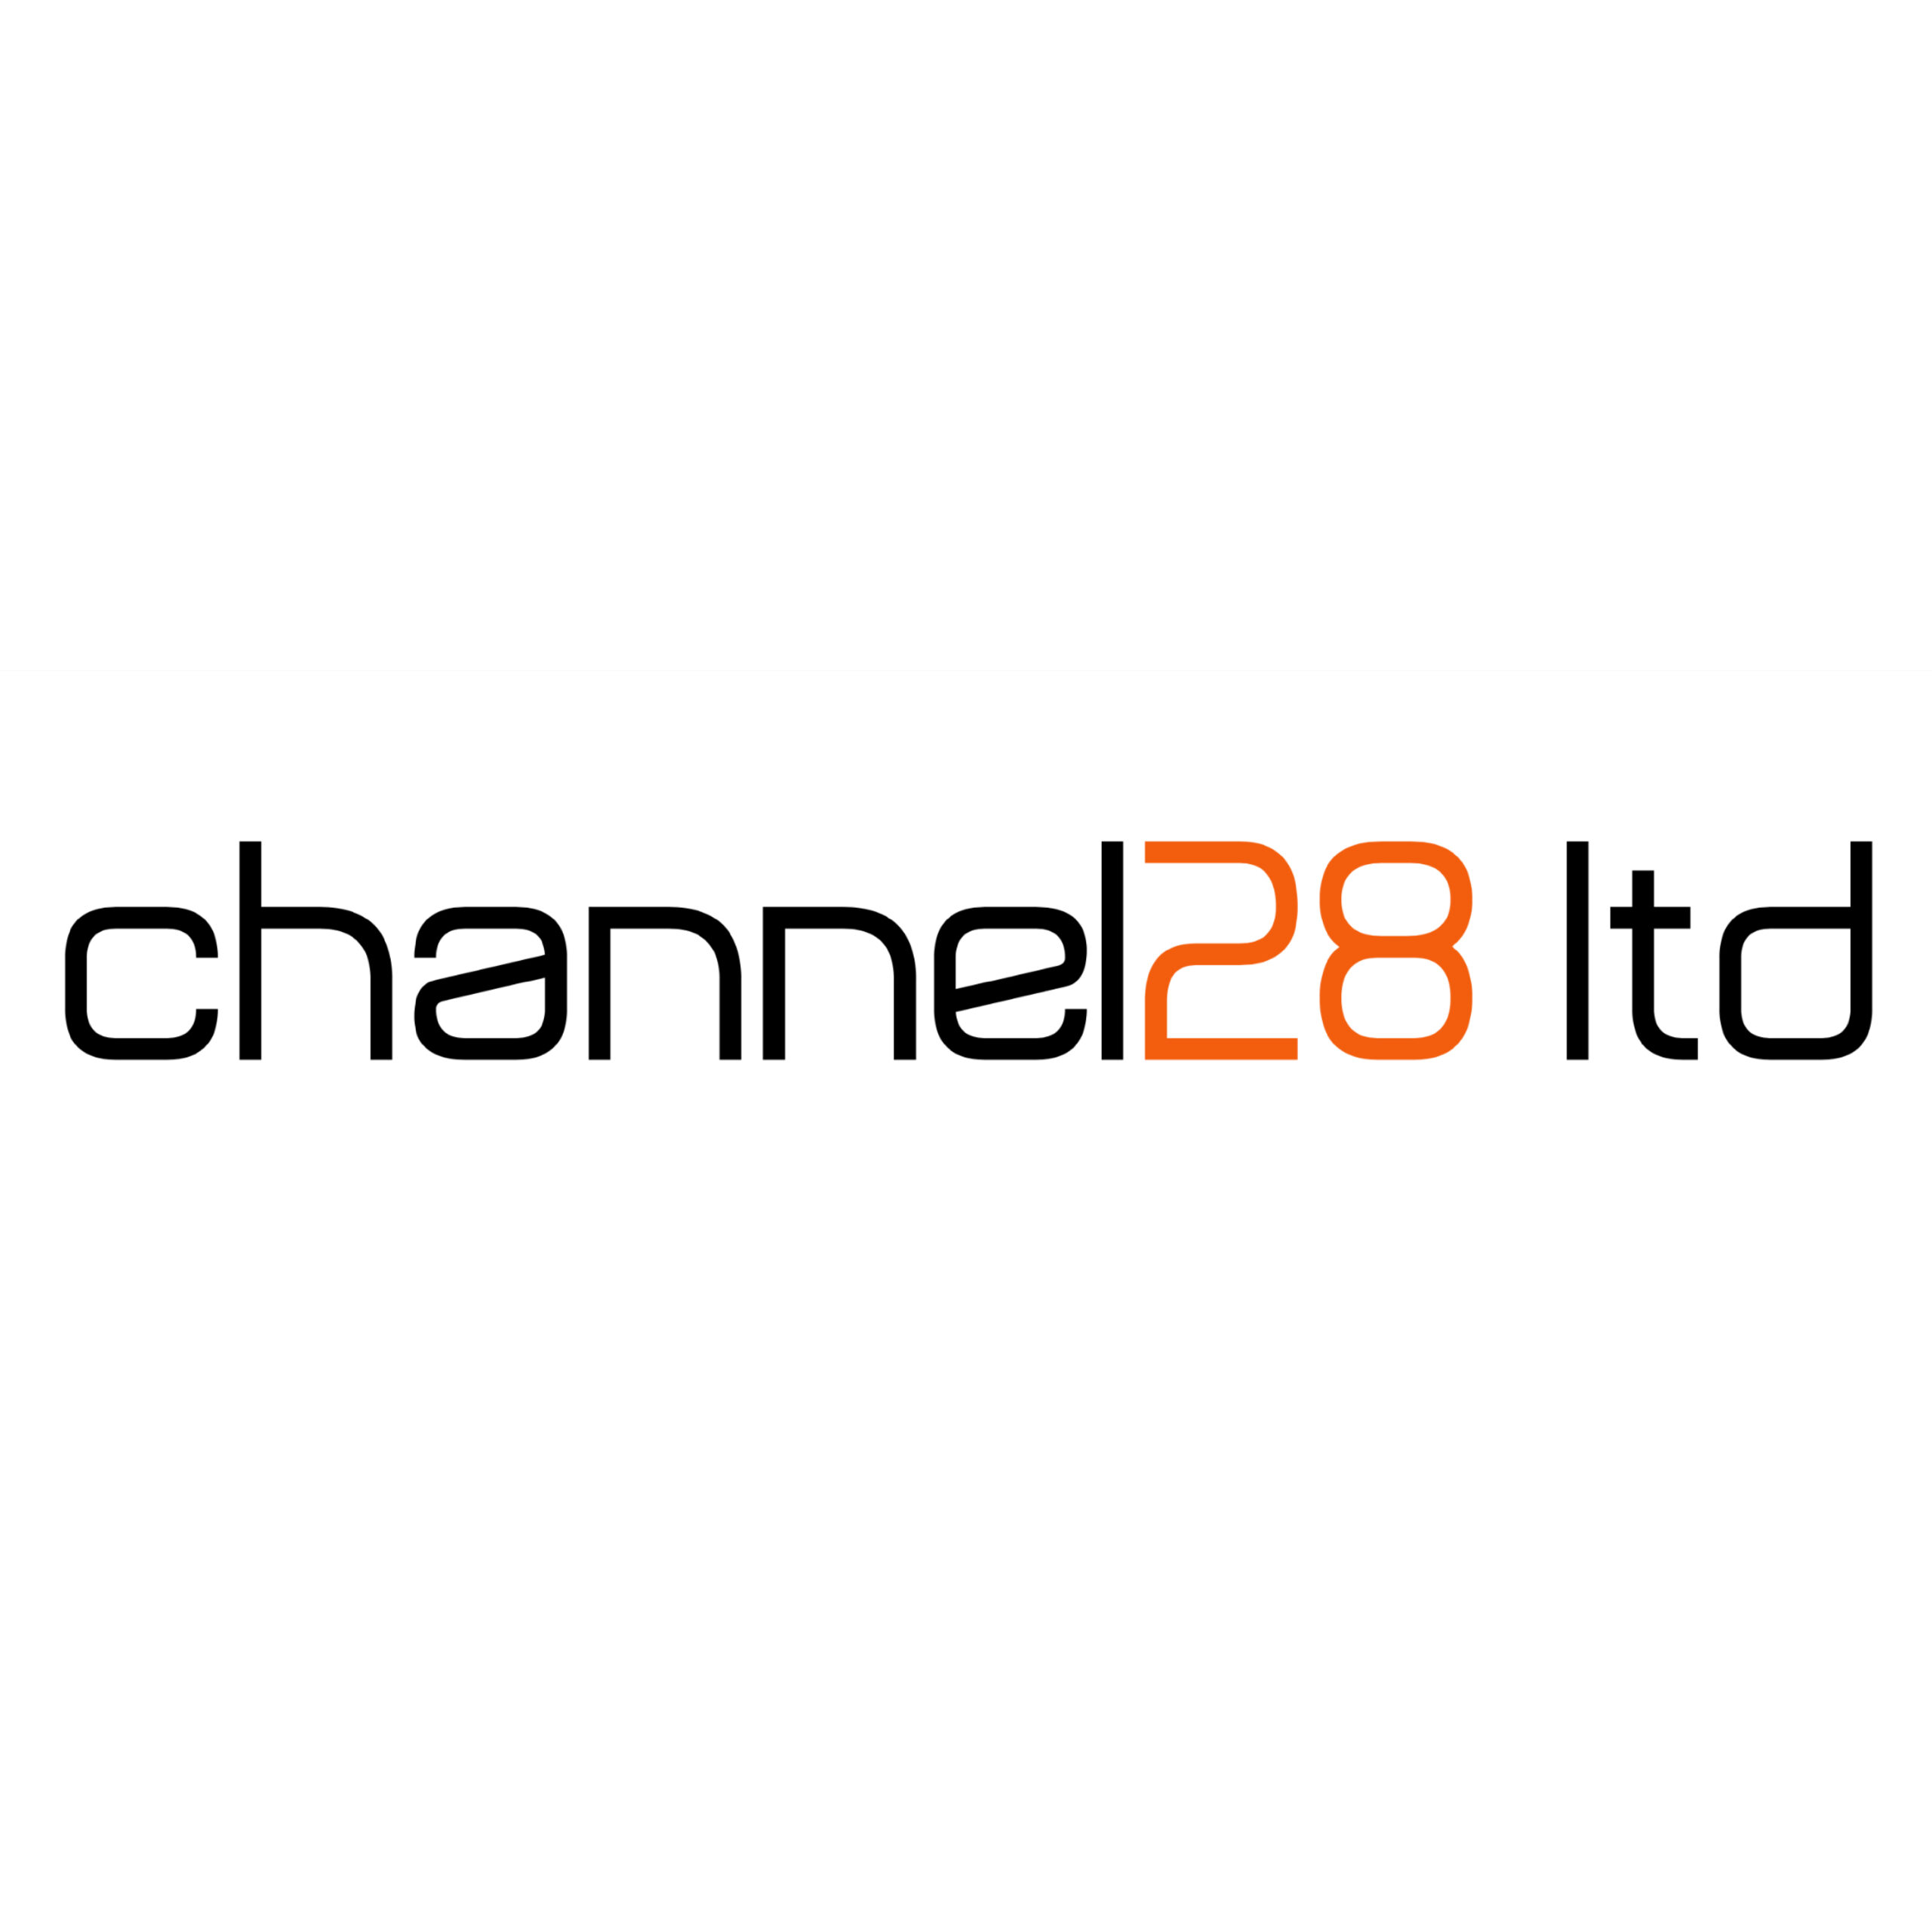 Channel28 Ltd